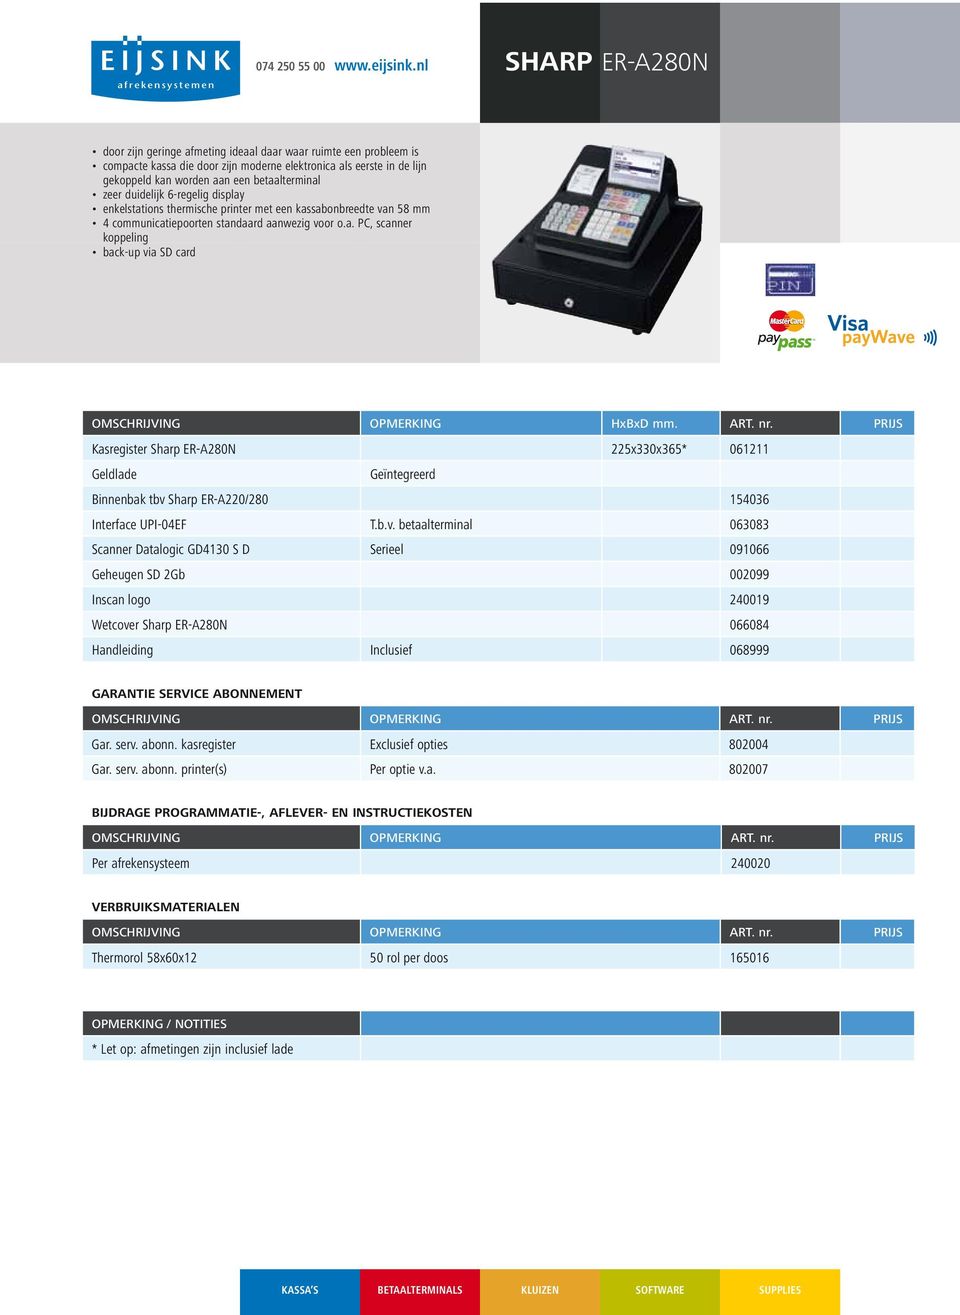 enkelstations thermische printer met een kassabonbreedte van 58 mm 4 communicatiepoorten standaard aanwezig voor o.a. PC, scanner koppeling back-up via SD card Kasregister Sharp ER-A280N 225x330x365* 061211 Geldlade Geïntegreerd Binnenbak tbv Sharp ER-A220/280 154036 Interface UPI-04EF T.